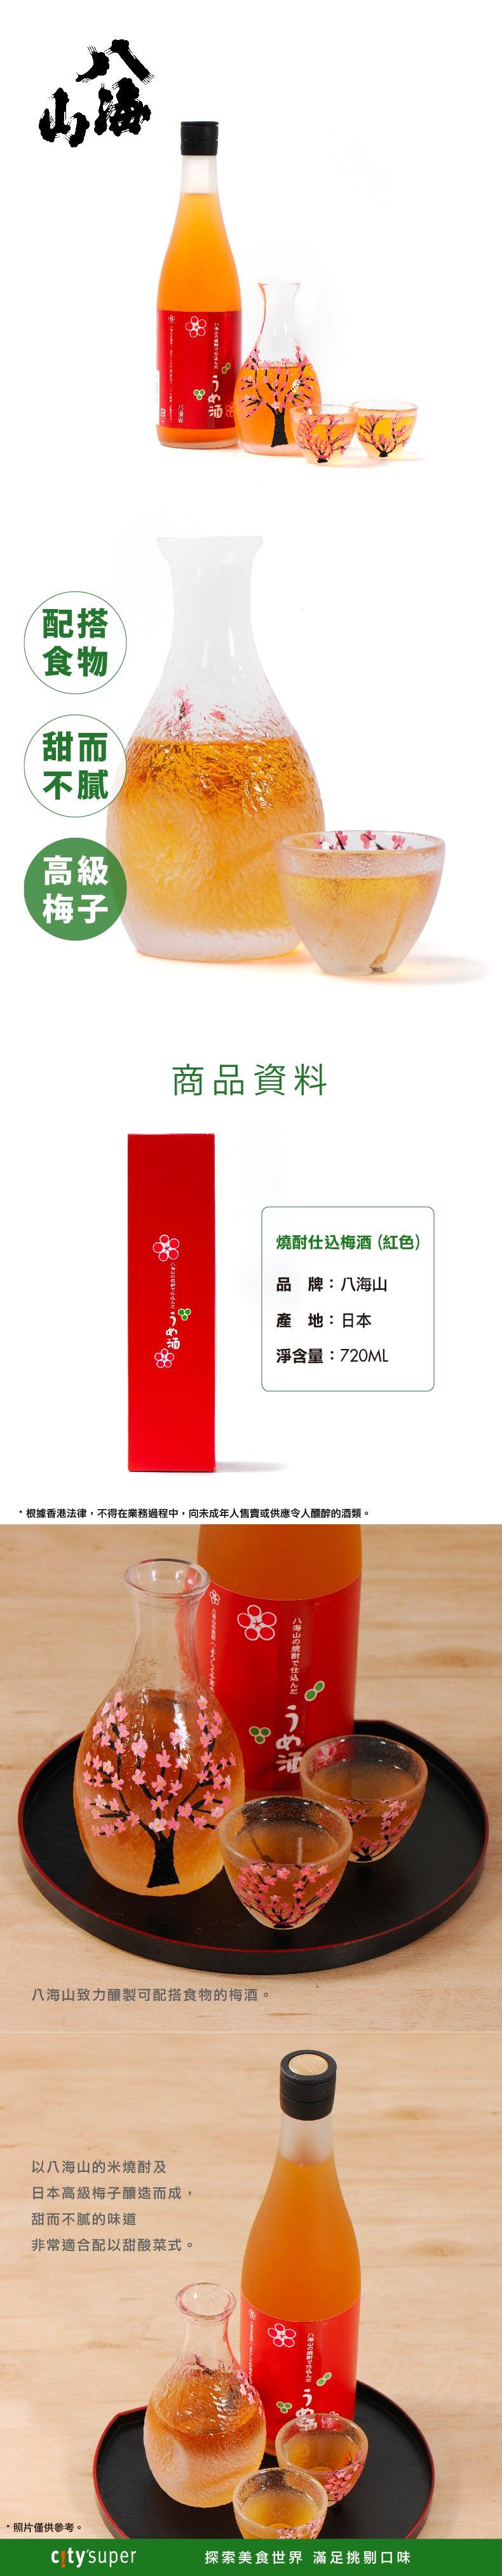 八海山 燒酎仕込梅酒 (紅色)  (720mL)